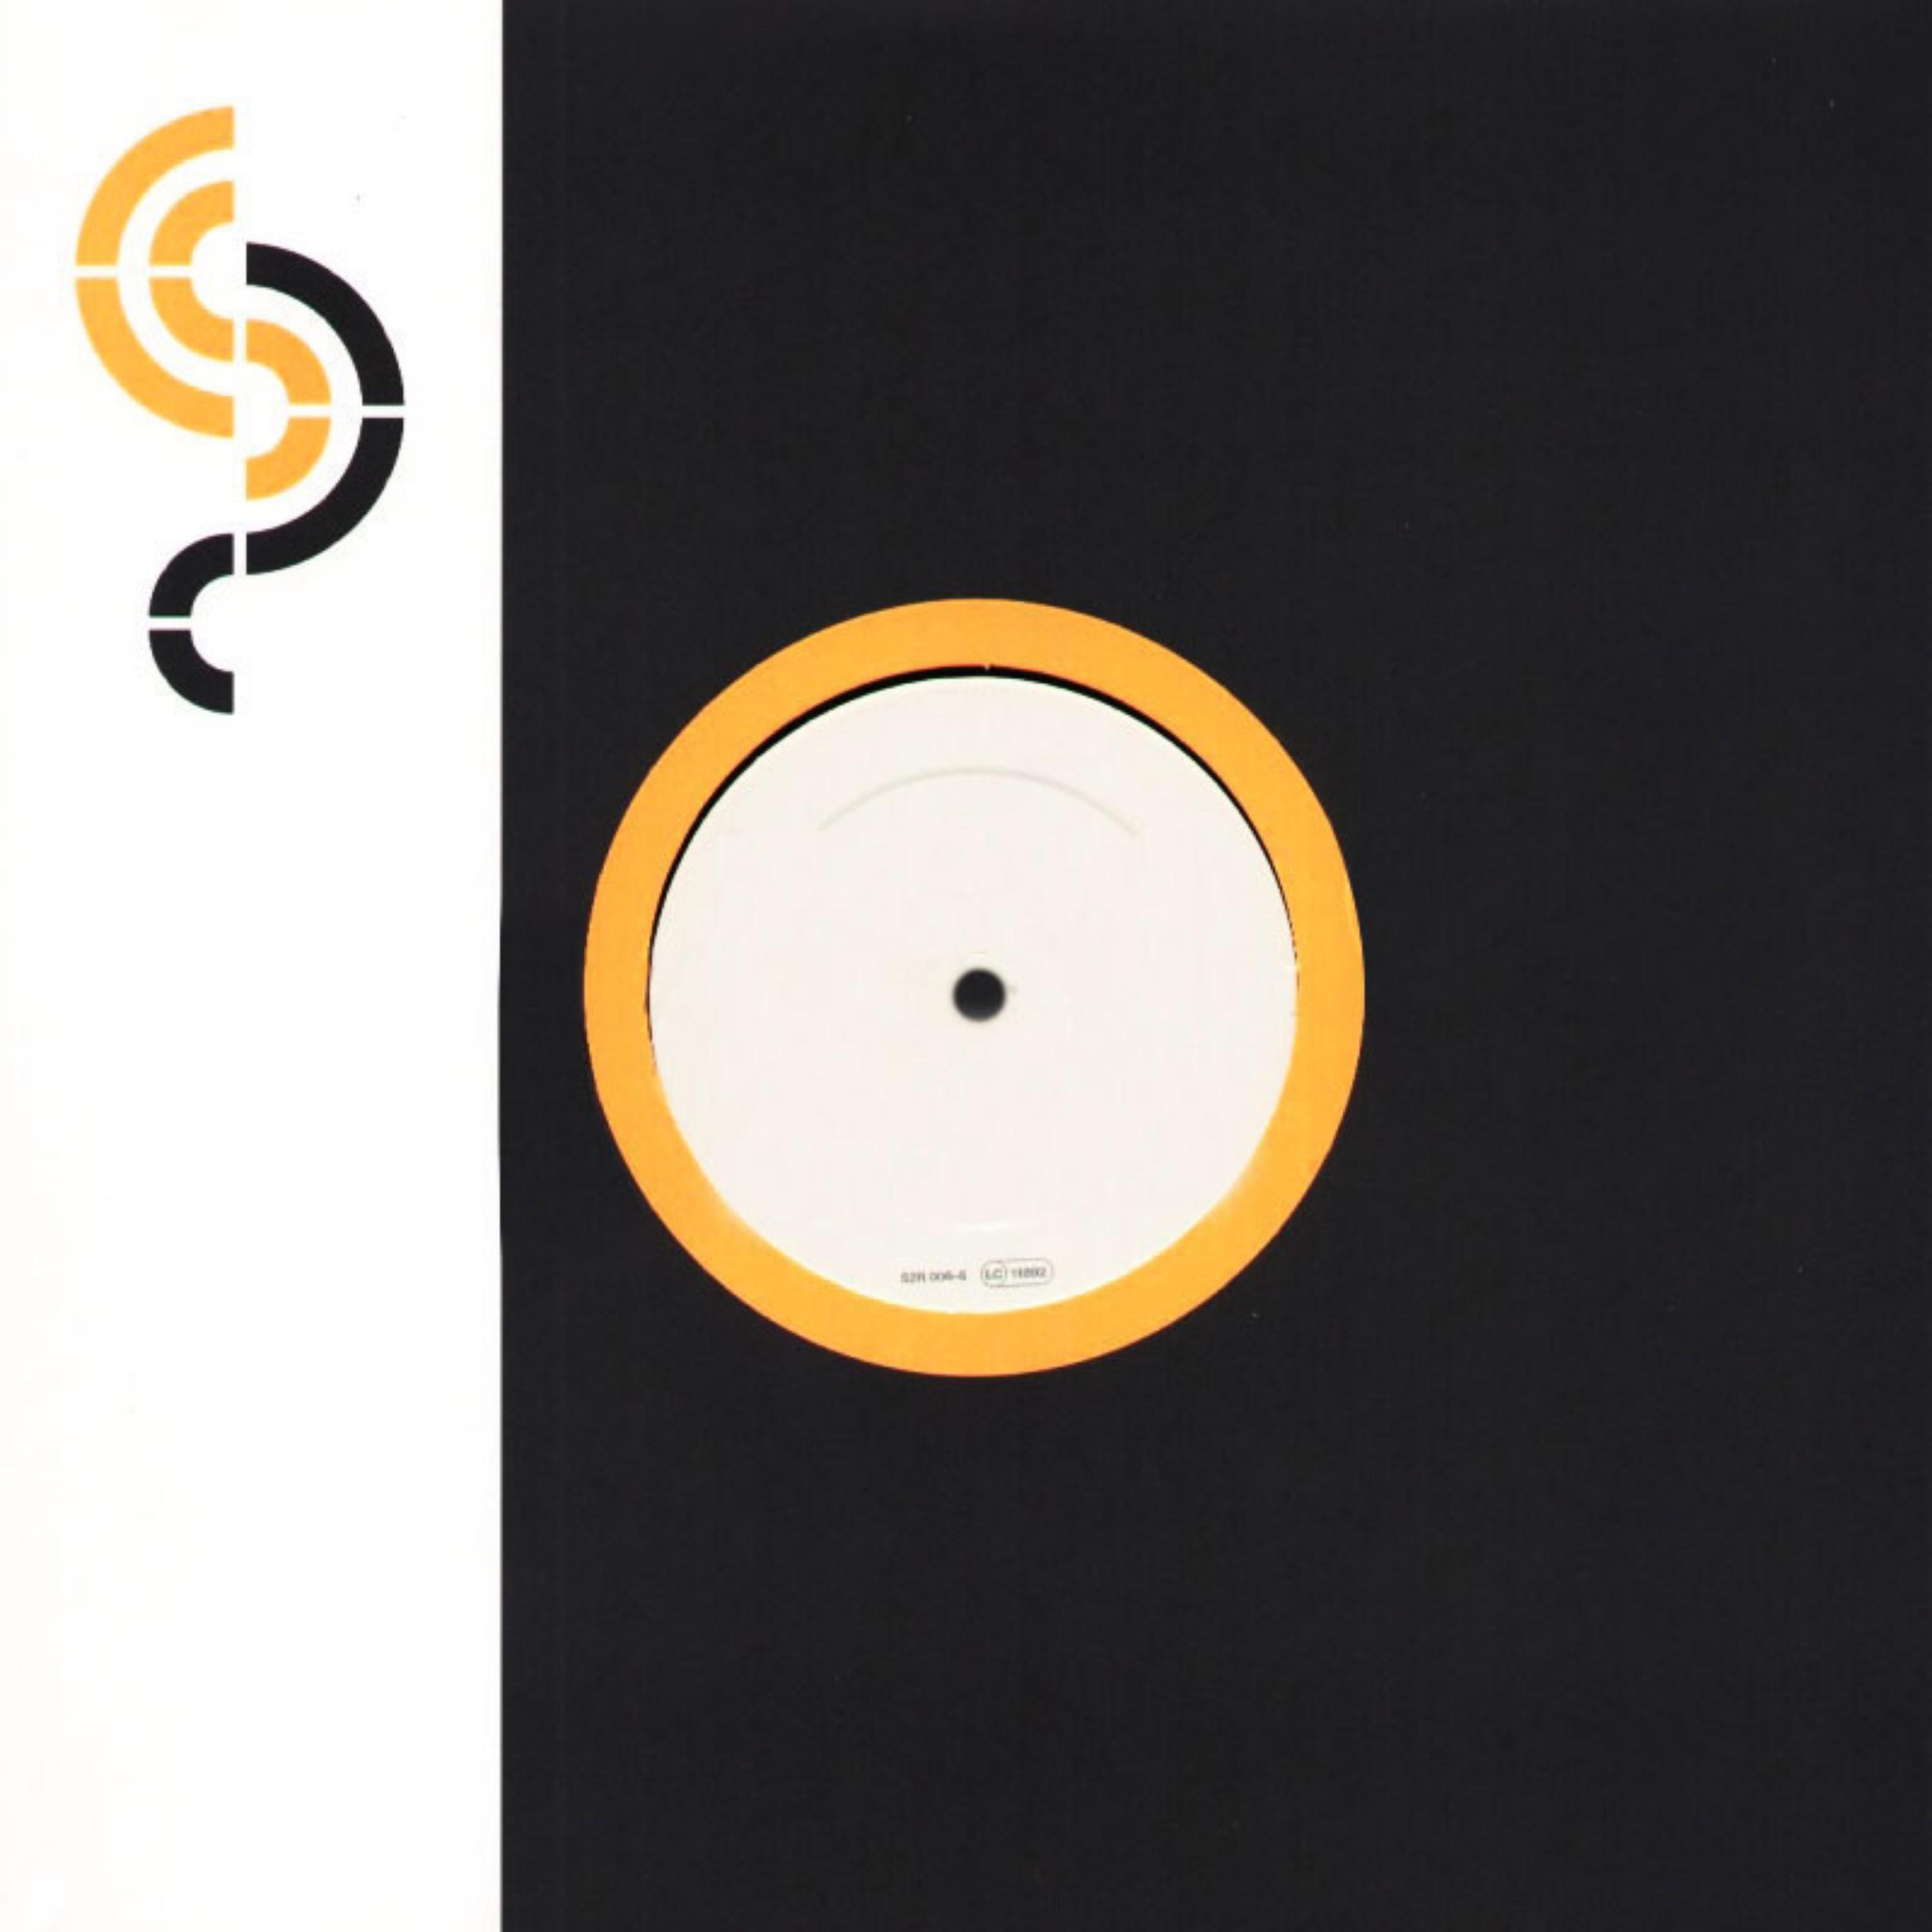 Three Drives On A Vinyl - Greece 2000 (DJ Tatana Remix)